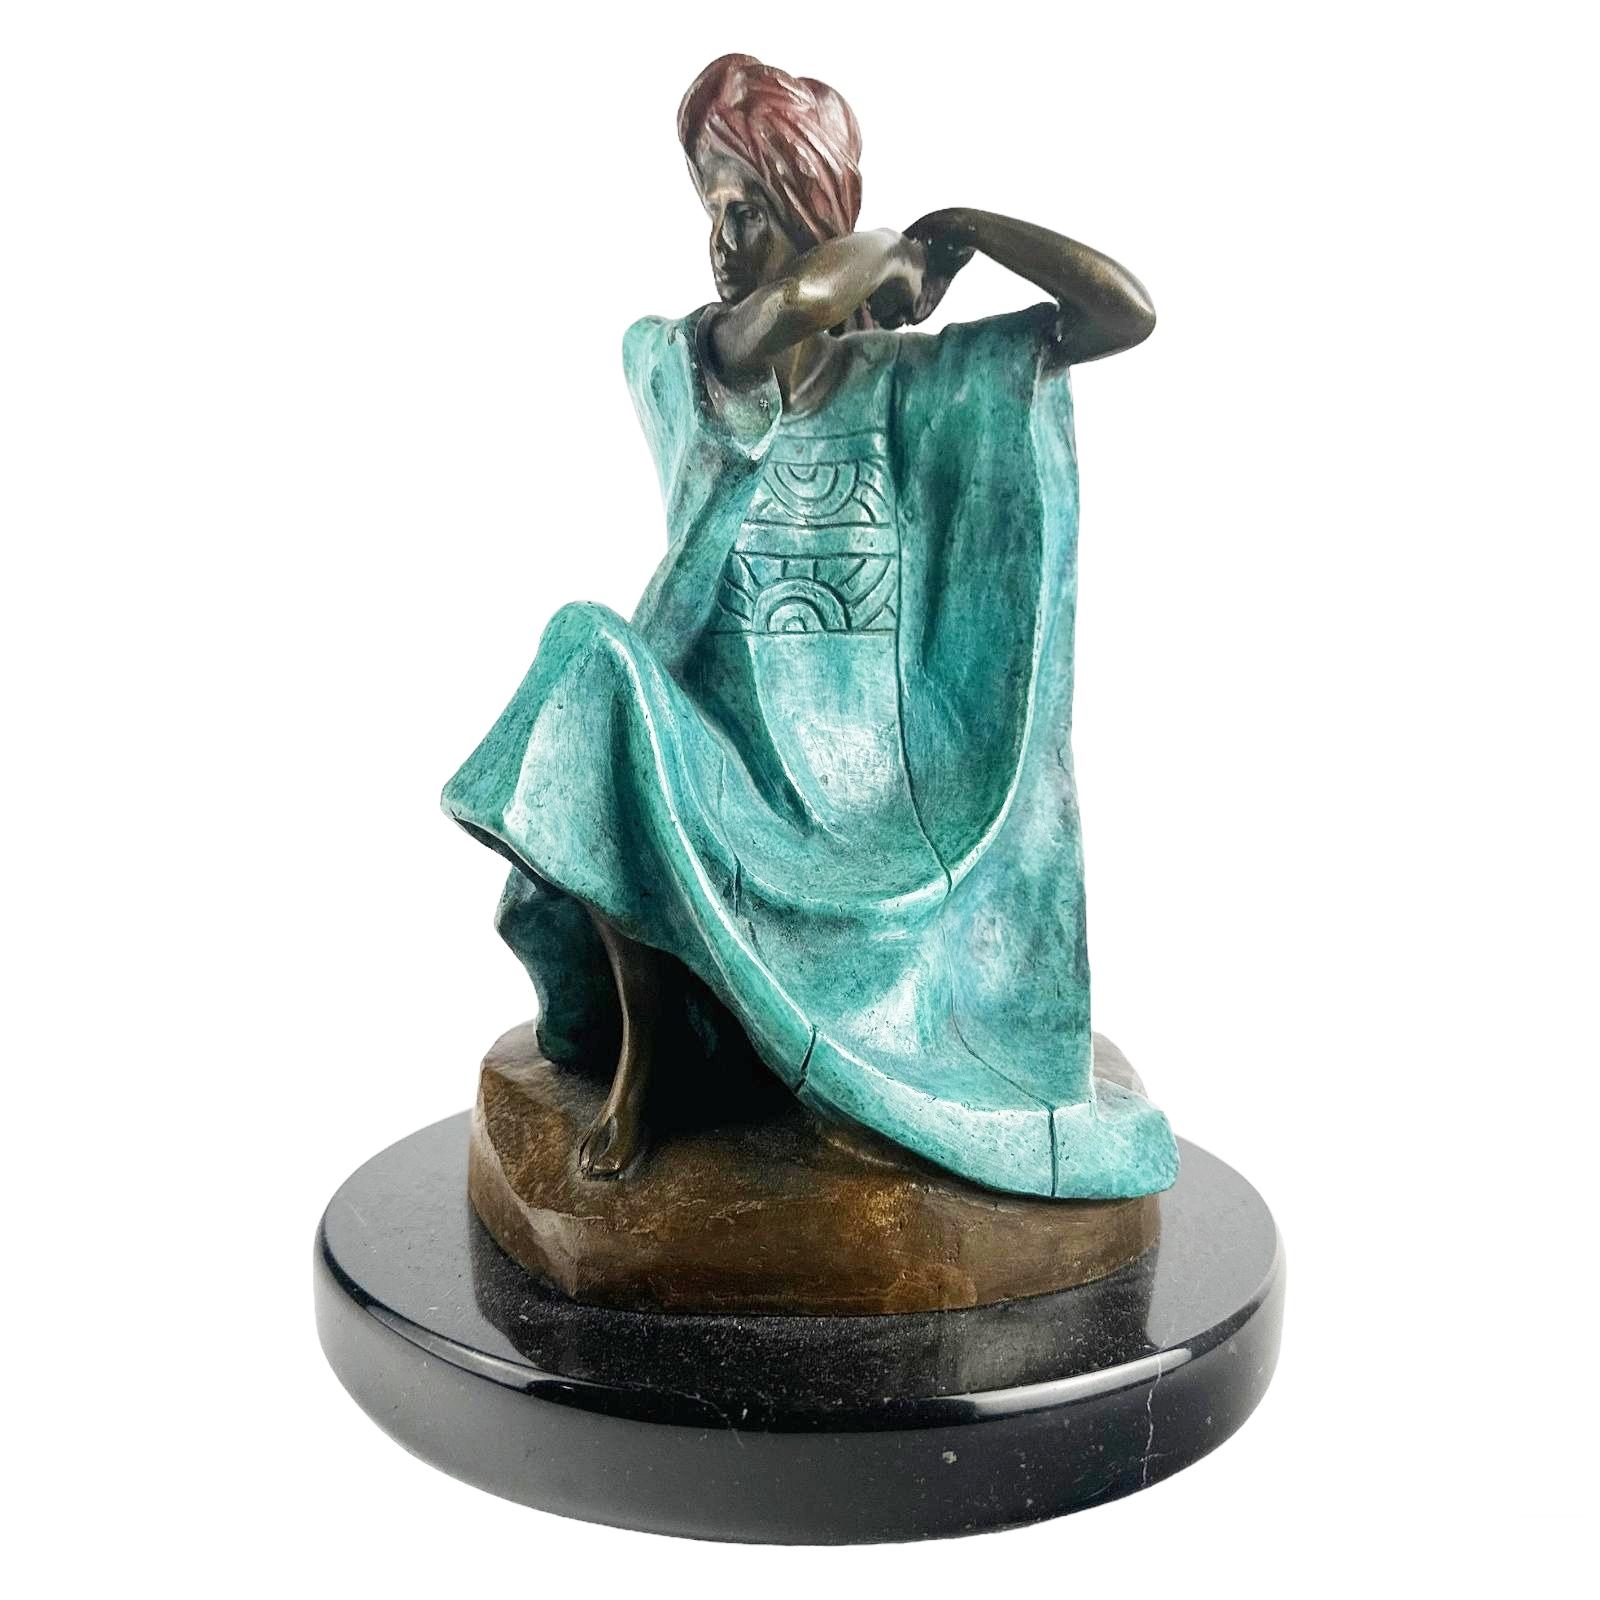 Victor Gutierrez (Mexikaner, geboren 1950). Eine limitierte Auflage einer kalt bemalten Bronzestatue. Figurales Werk in modernem Stil, das eine sitzende weibliche Figur in traditioneller Mestizo-Tracht mit rotem Turban auf einem modernistischen